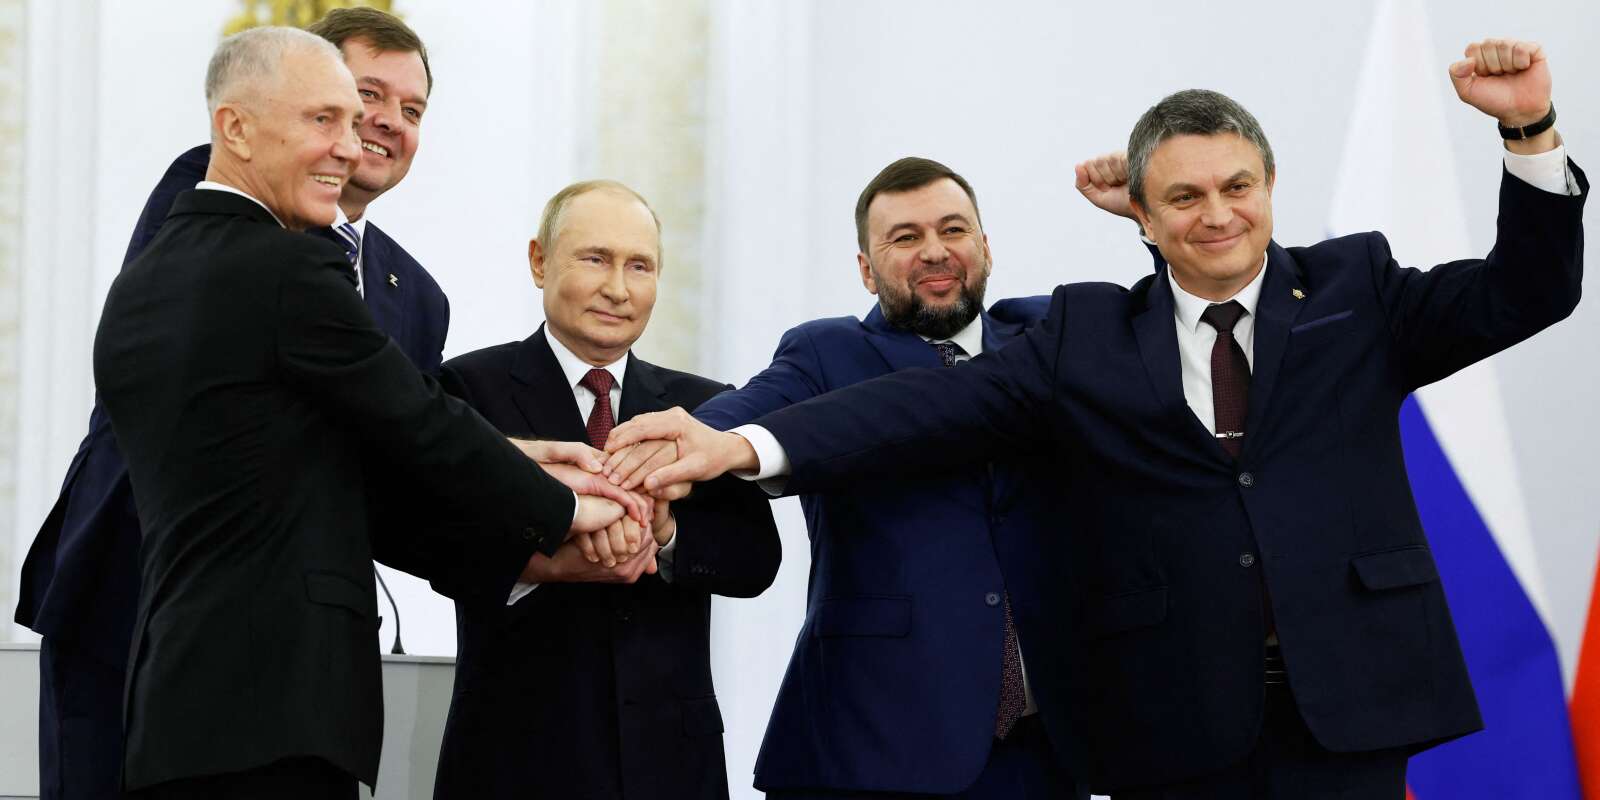 Vladimir Poutine et Denis Pushilin, Leonid Pasechnik, Vladimir Saldo, Yevgeny Balitsky, qui sont les dirigeants installés par la Russie dans les régions ukrainiennes, à Moscou, en Russie, le 30 septembre 2022.